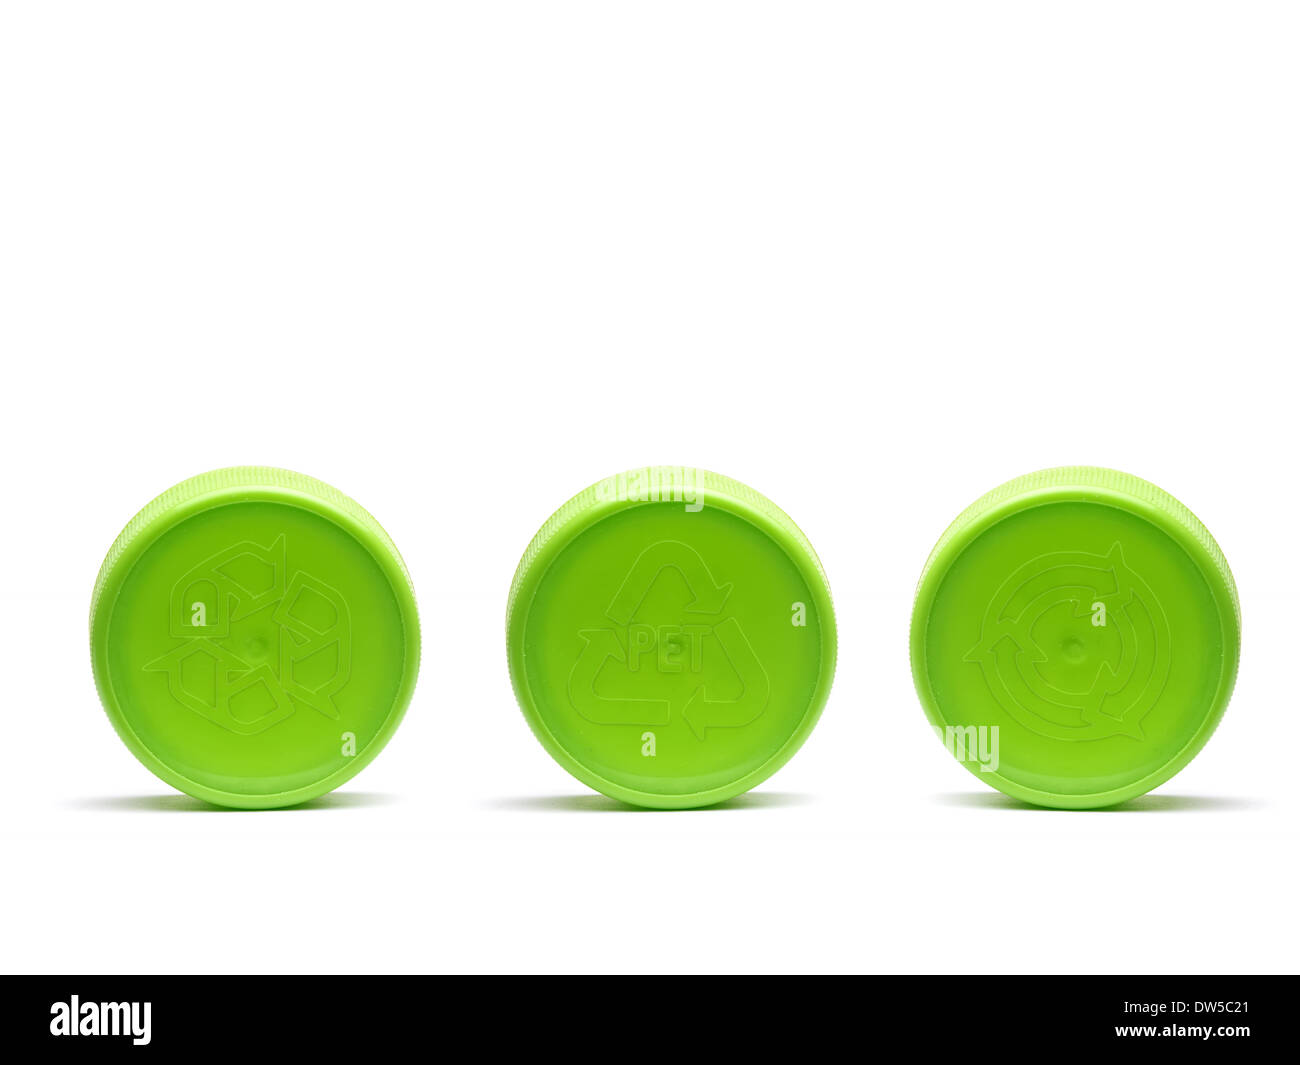 Tre verdi tappi in plastica con diversi simboli di riciclo embosed shot su bianco Foto Stock